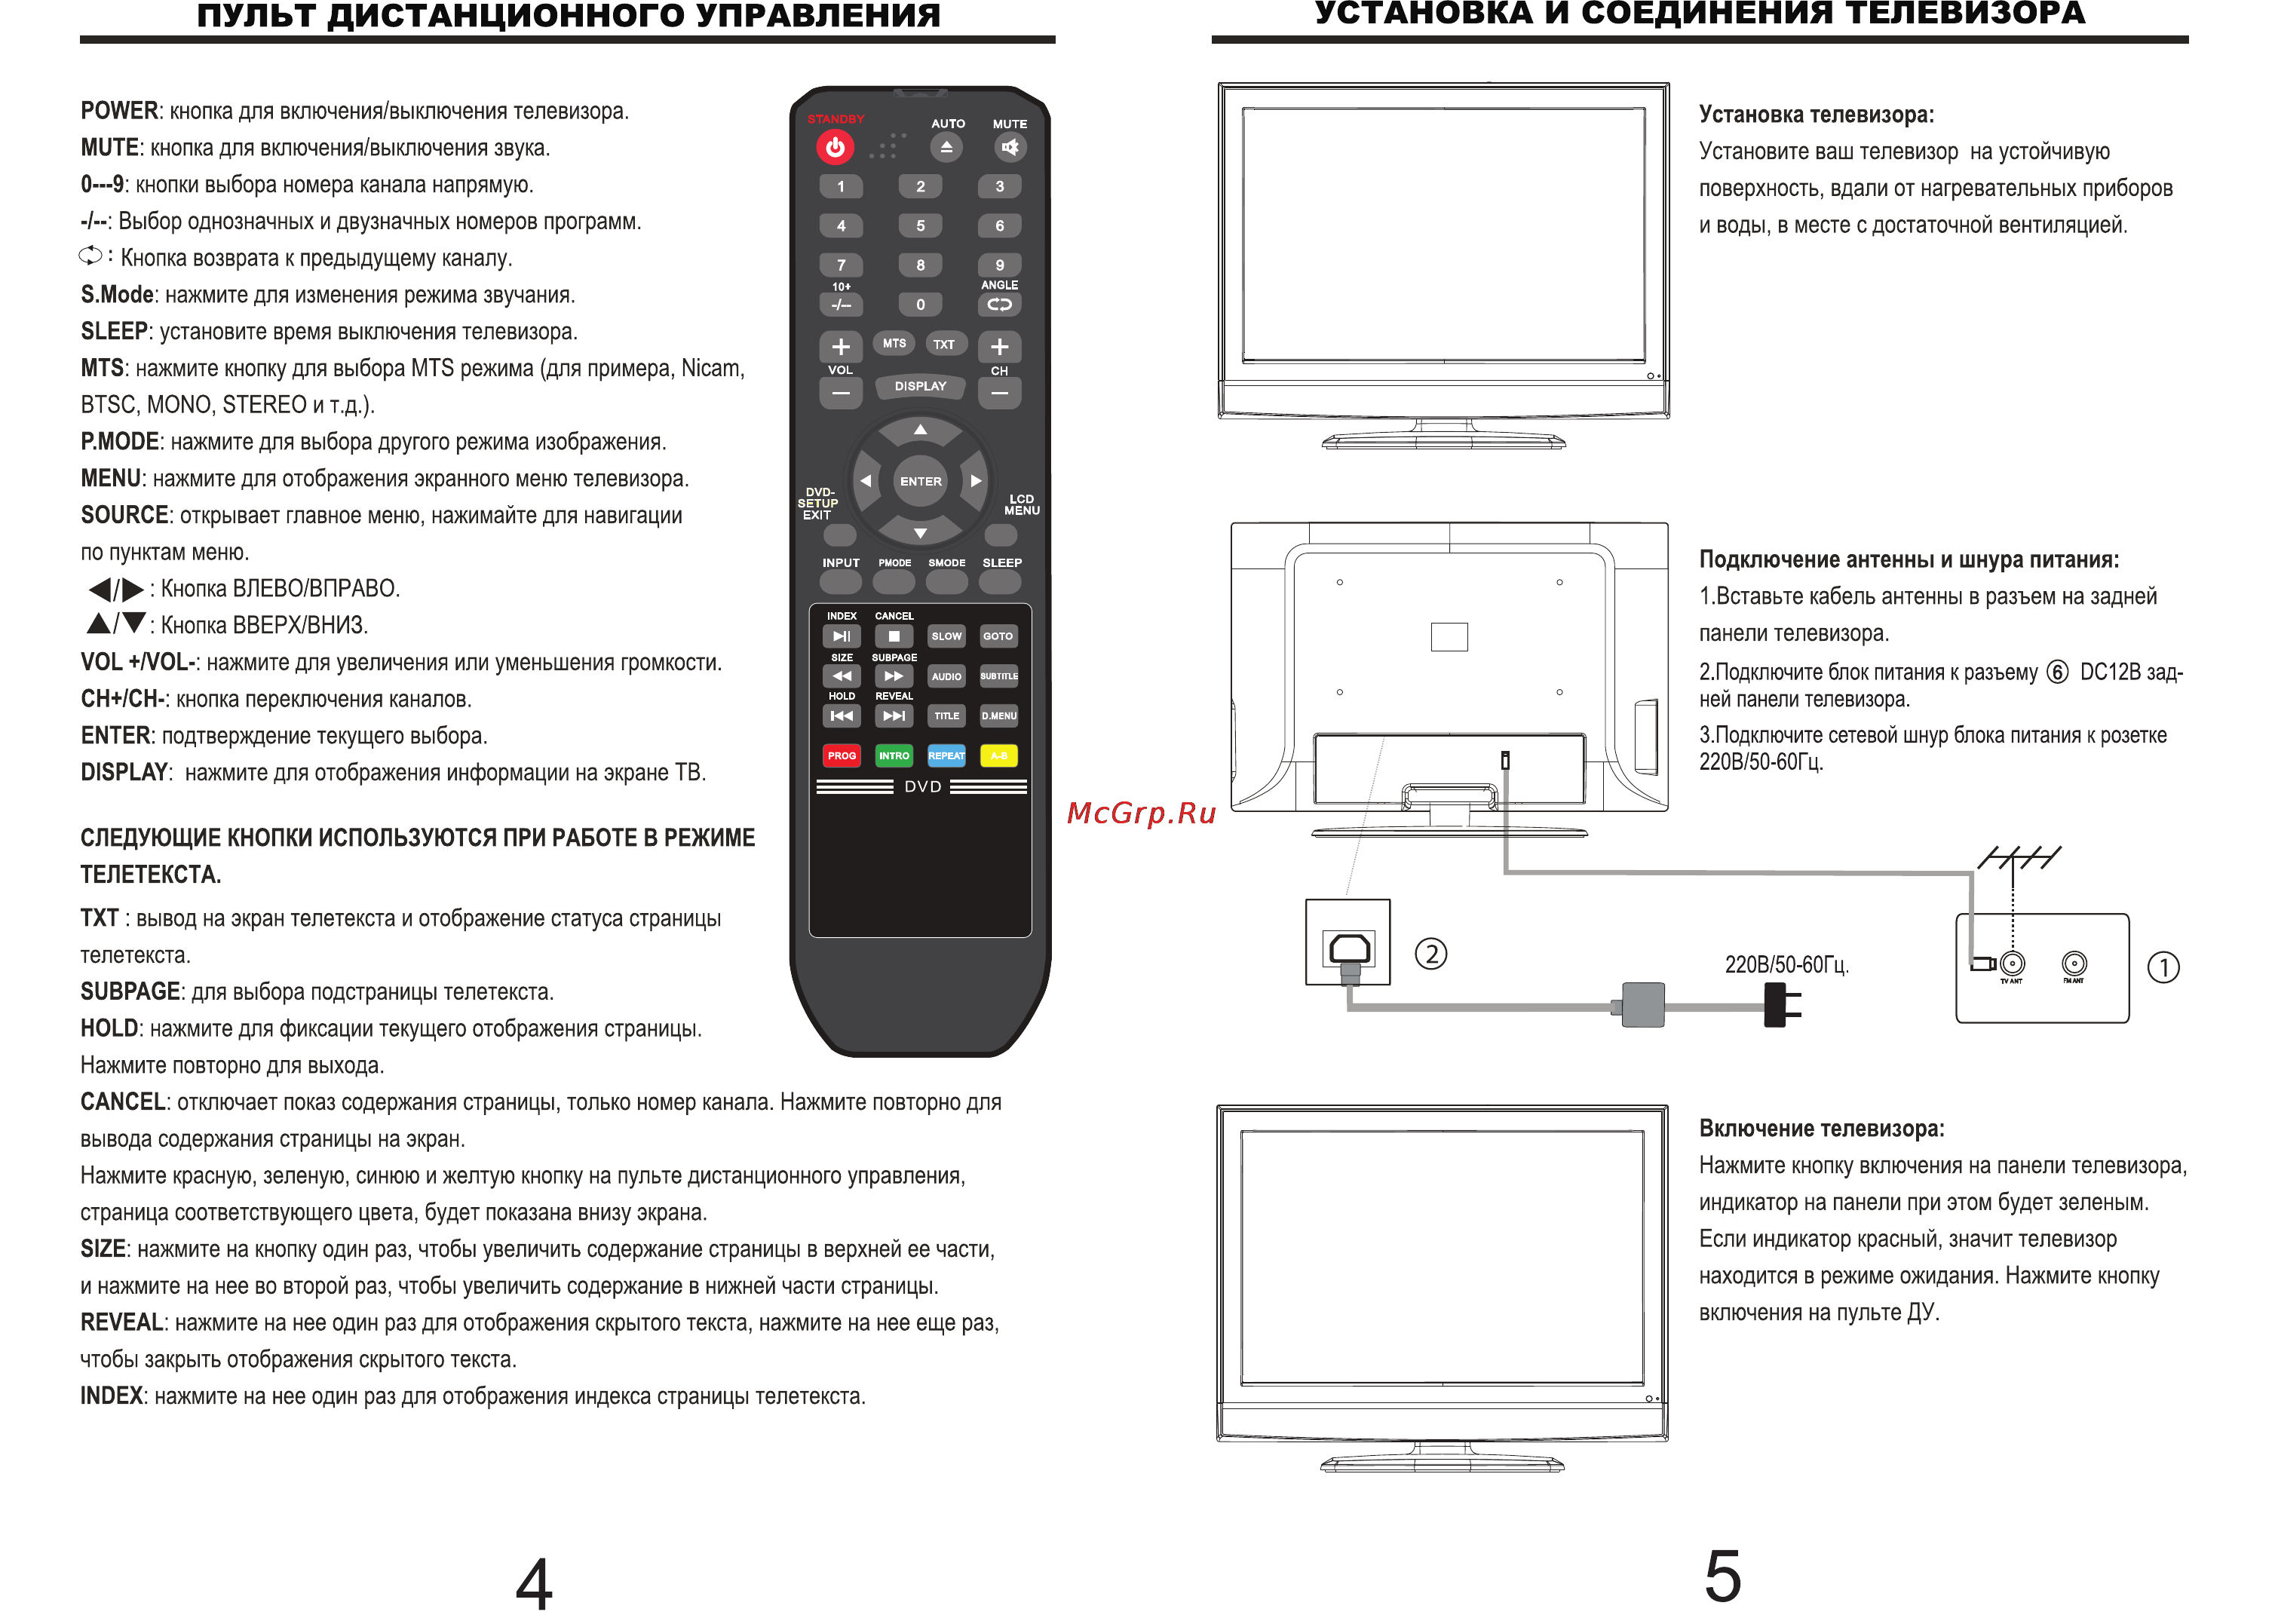 Как управлять телевизором с телефона без ик порта — инструкция